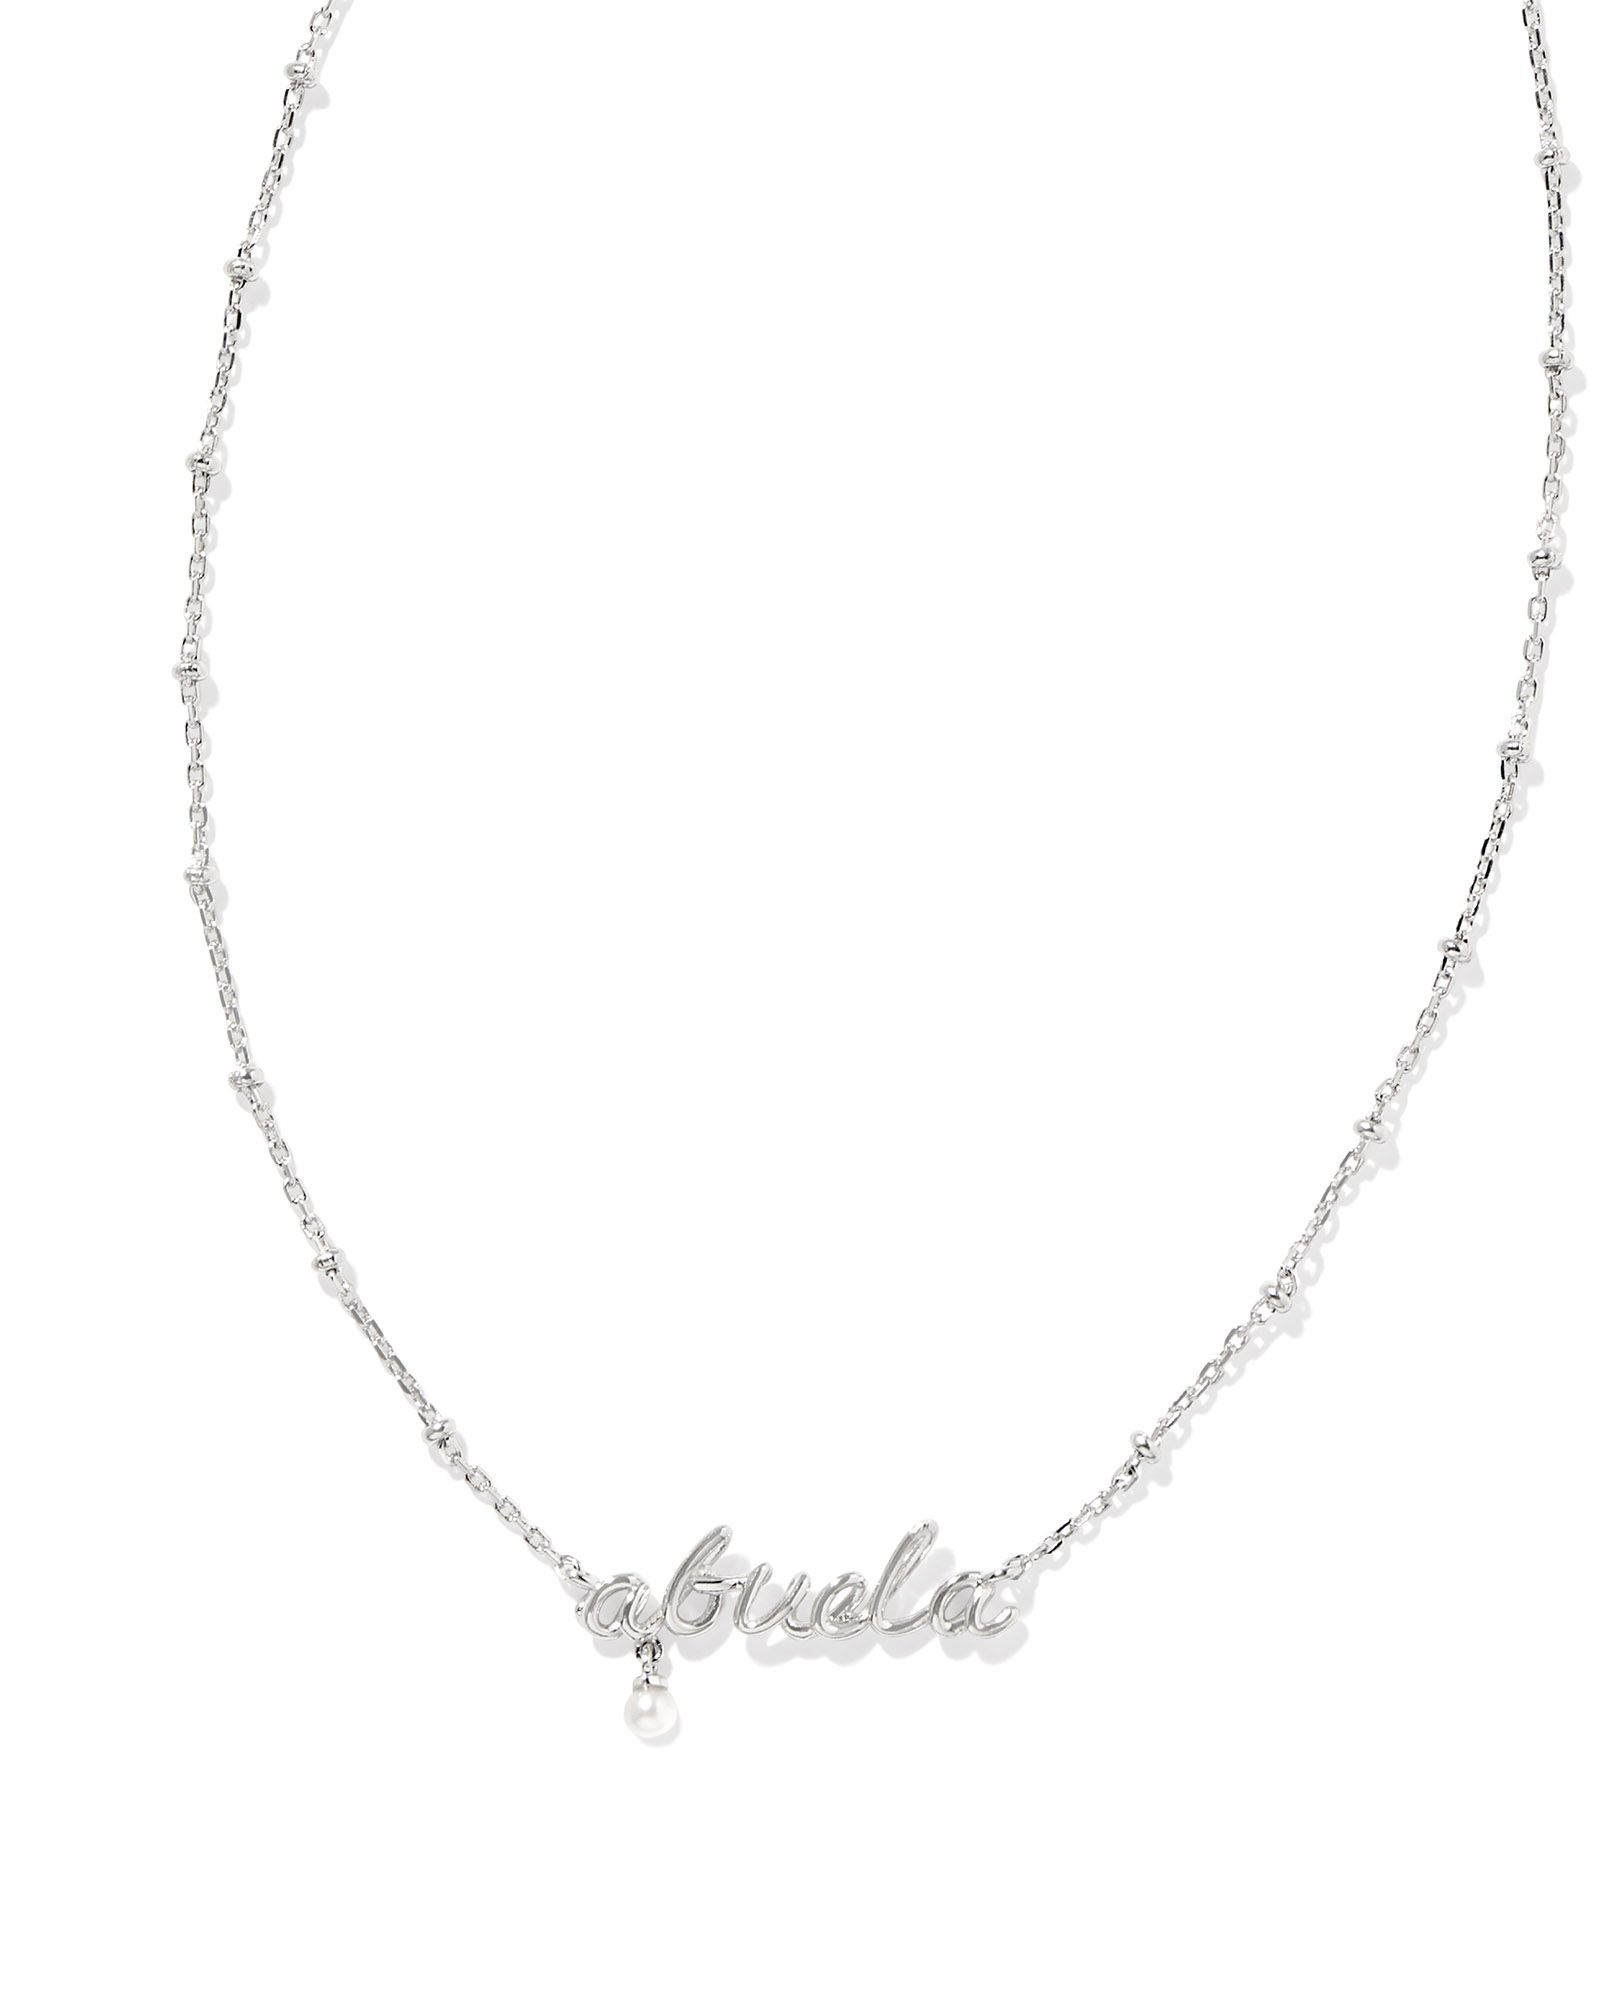 Abuela Script Pendant Necklace in Silver | Kendra Scott | Kendra Scott